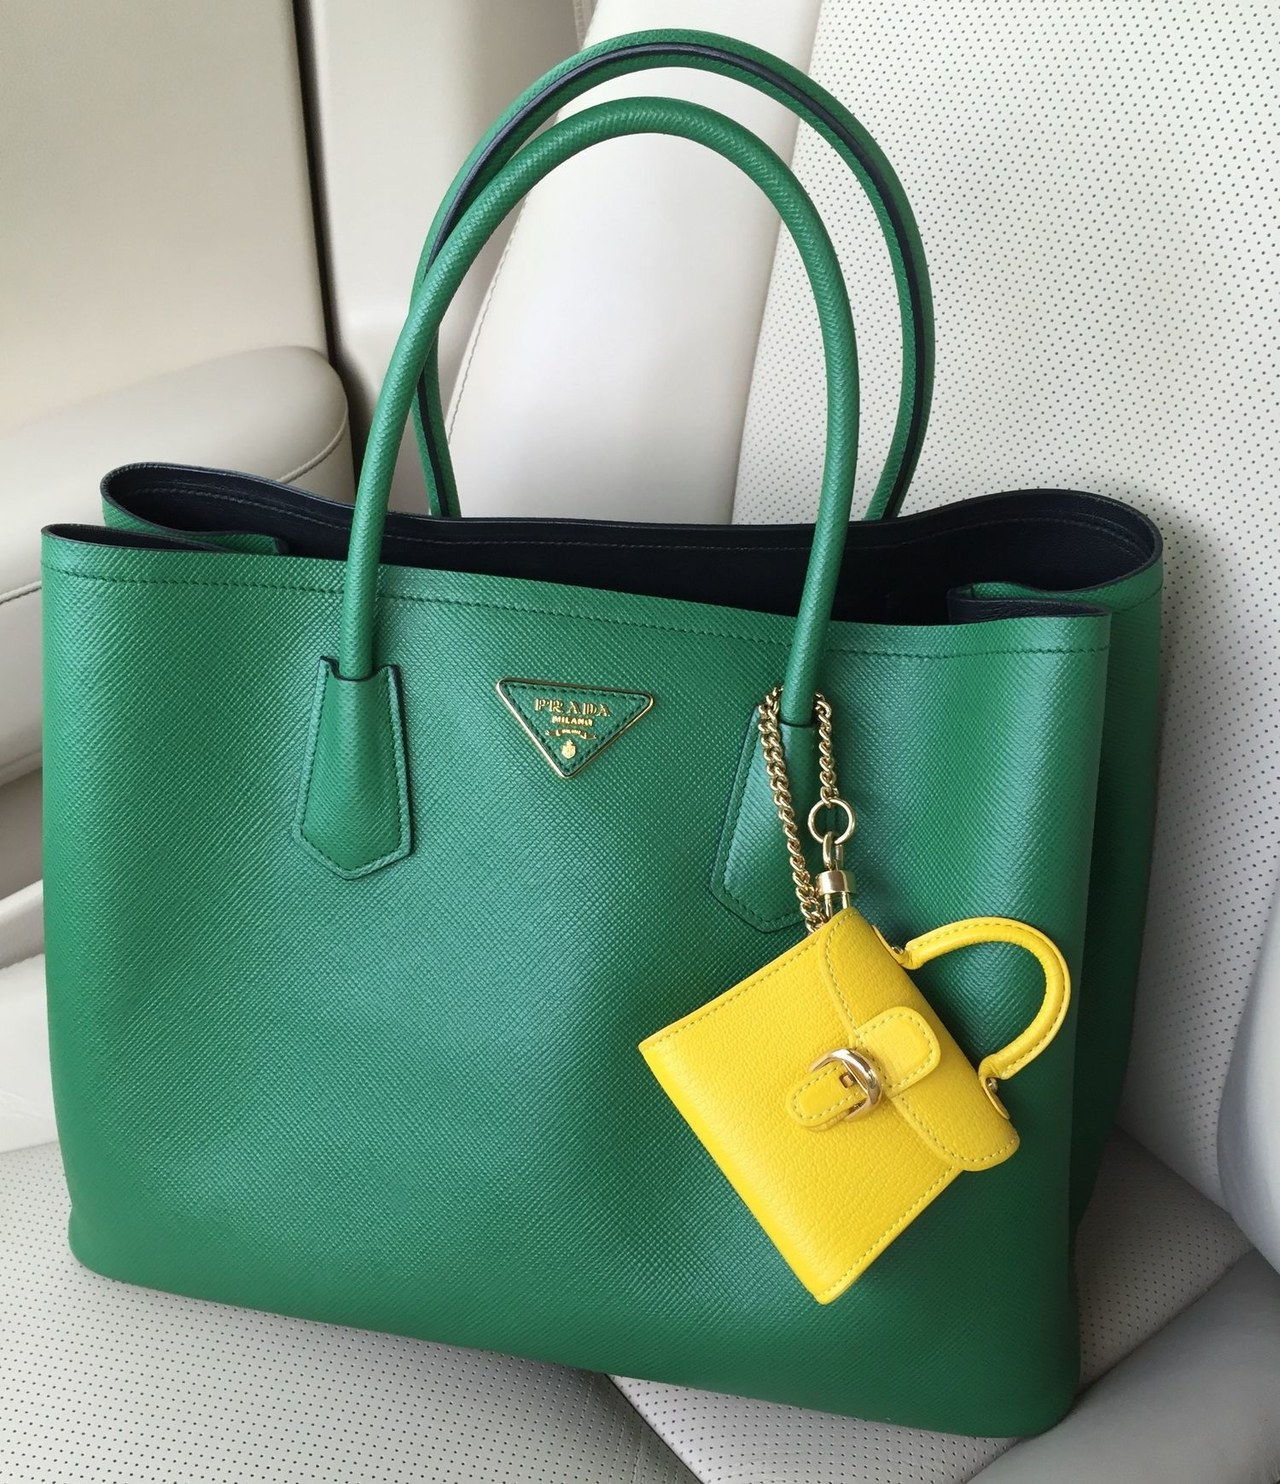 蒂娜 craig green prada tote mini purse keychain